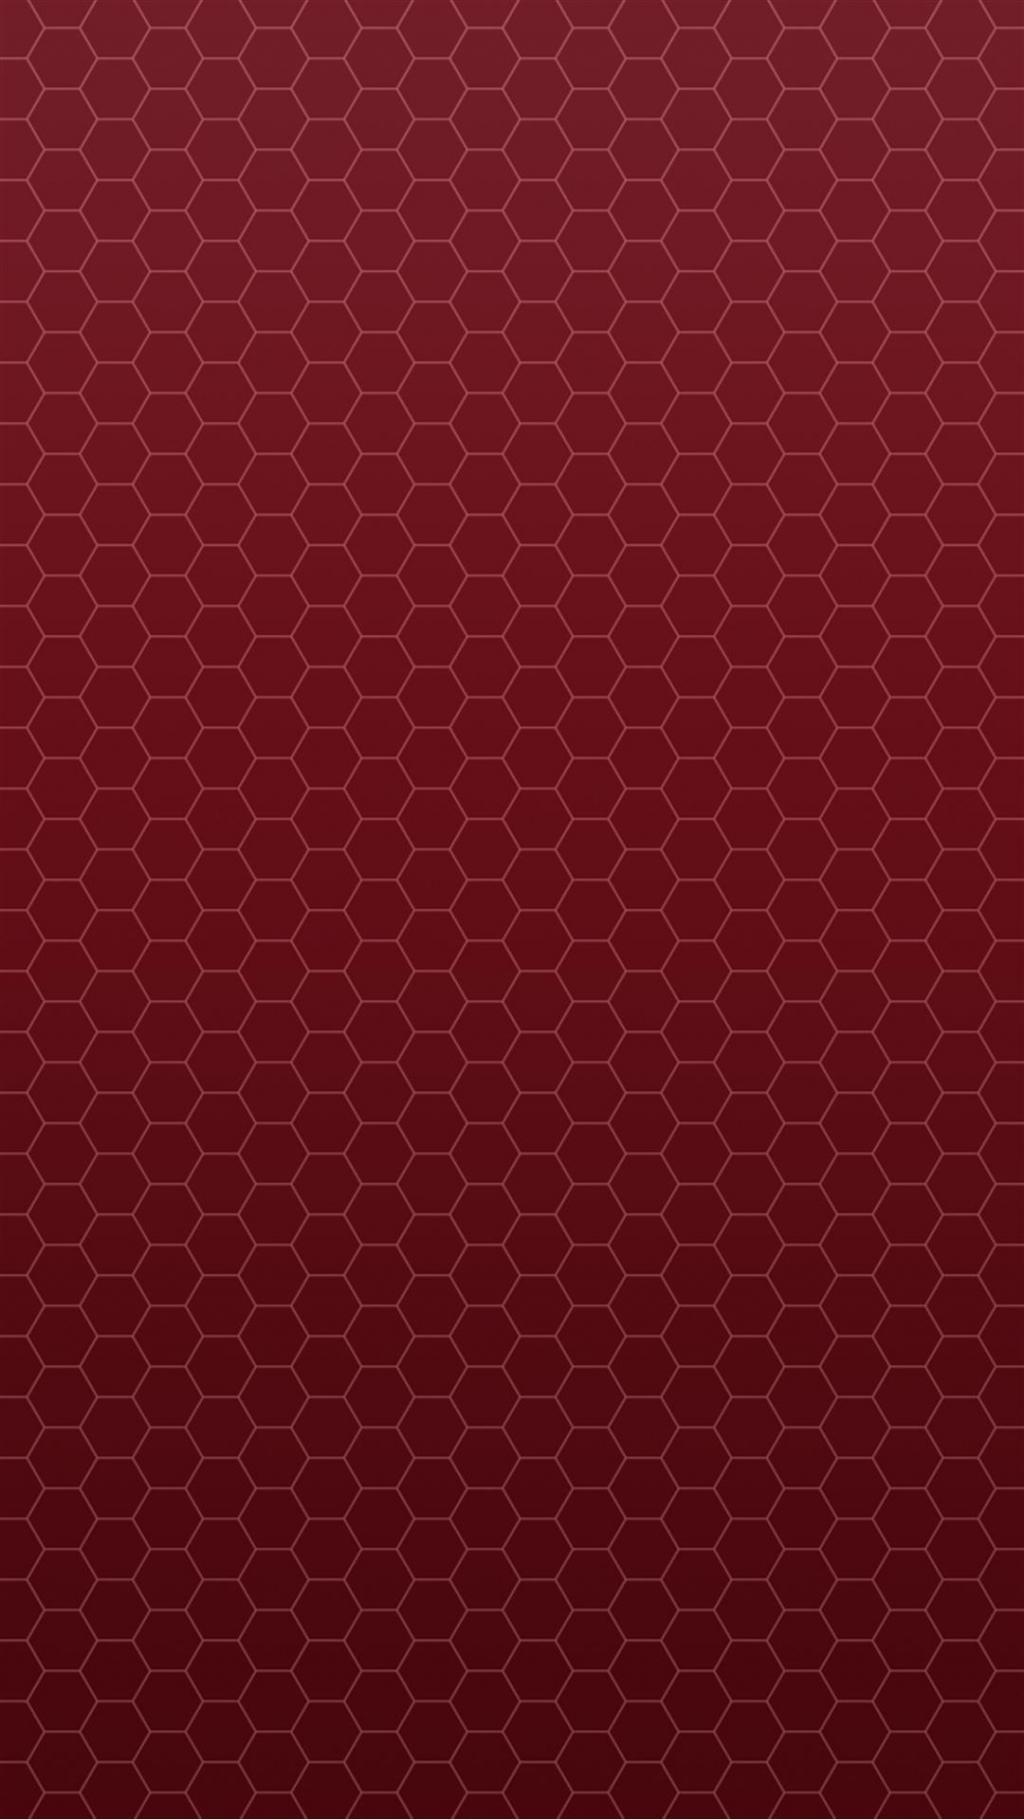 蜂窝红色图案iPhone 6 Plus高清壁纸